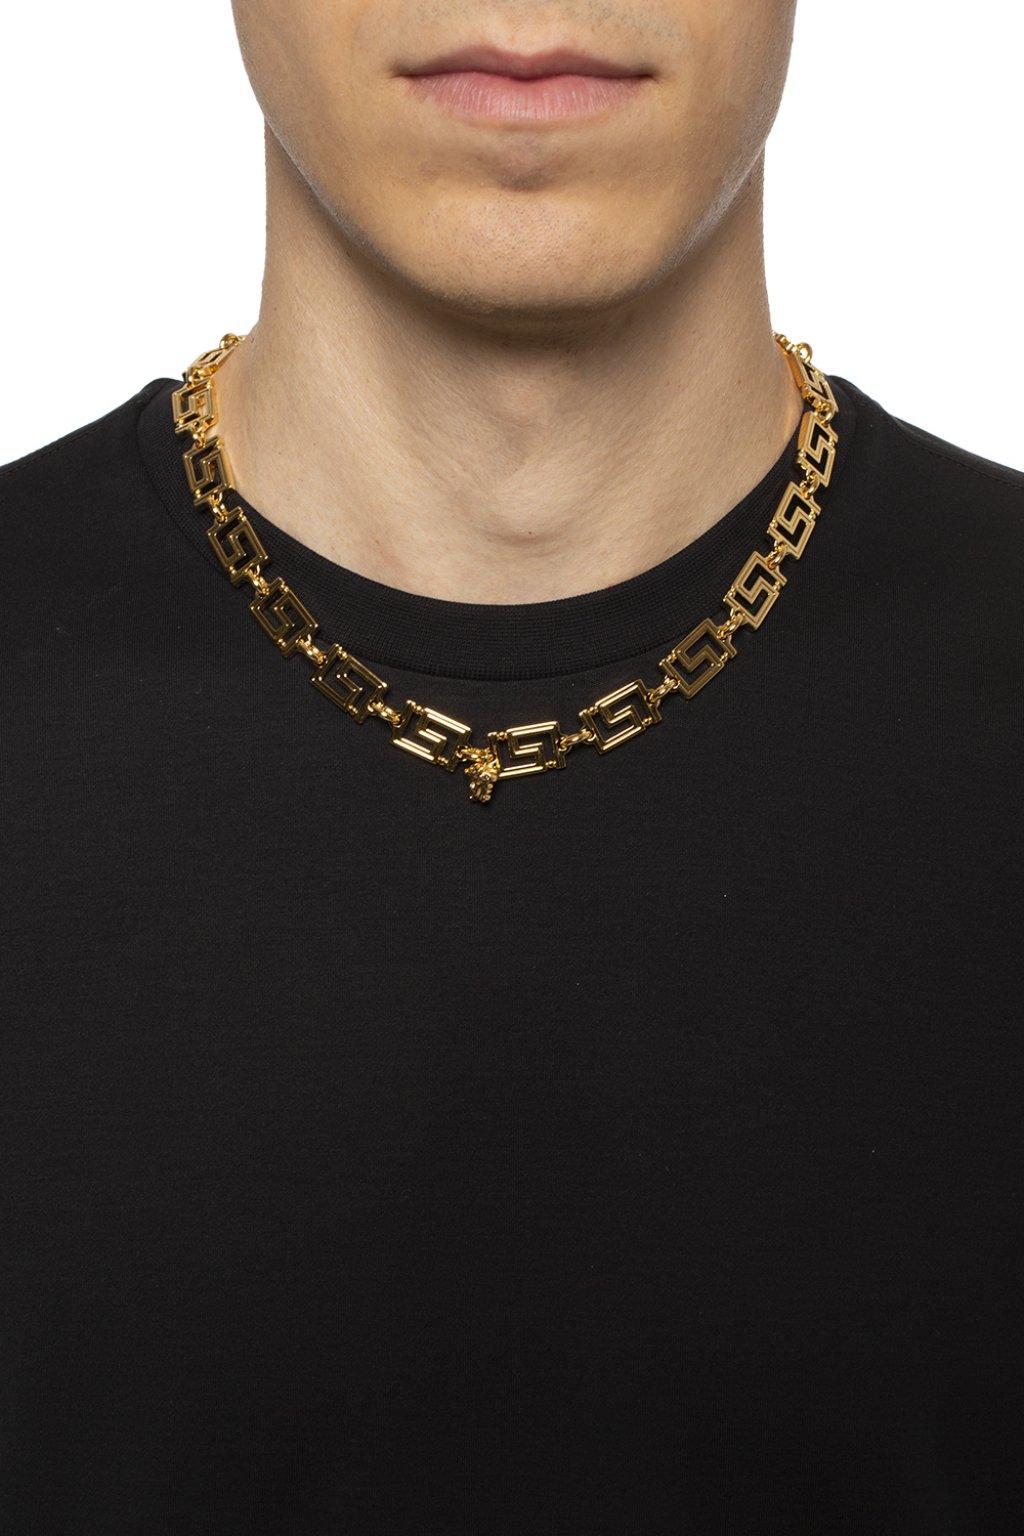 Gold Greek Key Necklace GMN11 – Samourakis Jewelry